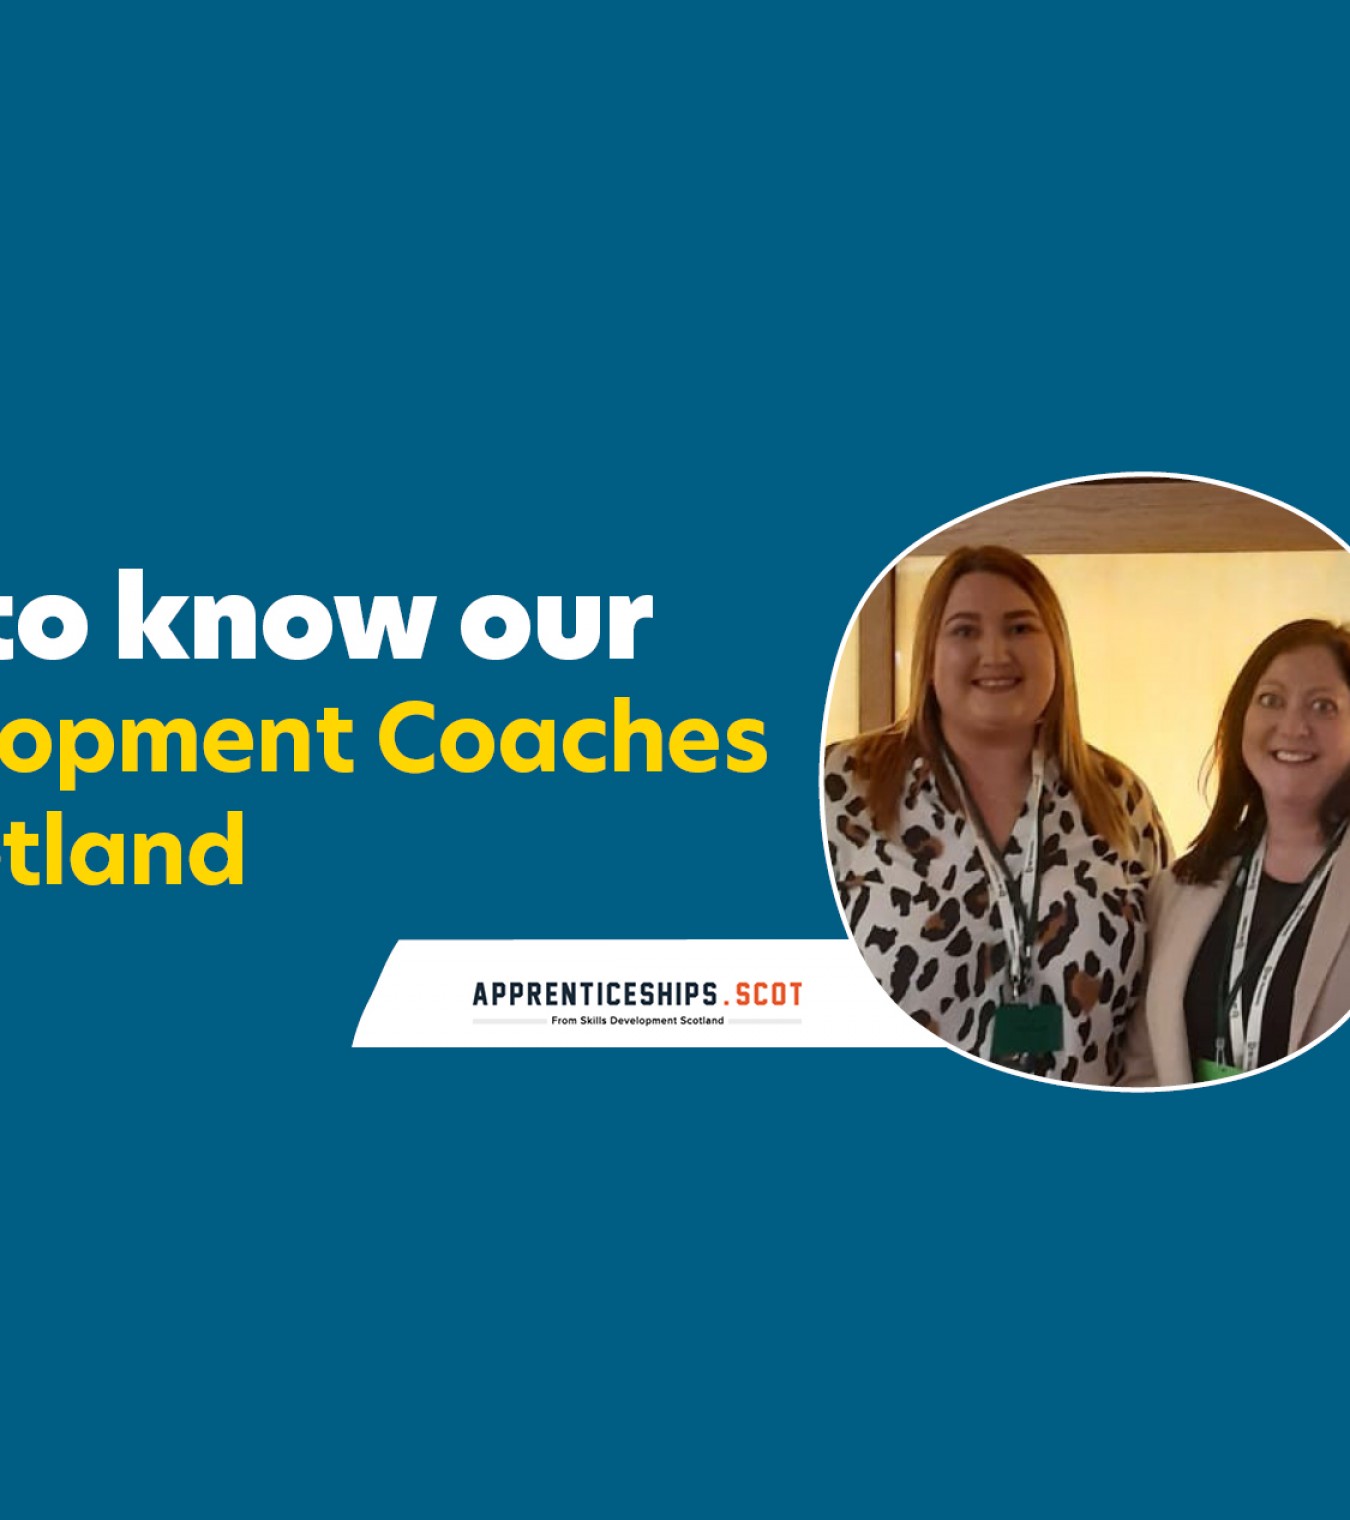 Scottish Apprenticeship Week - Meet our Development Coaches